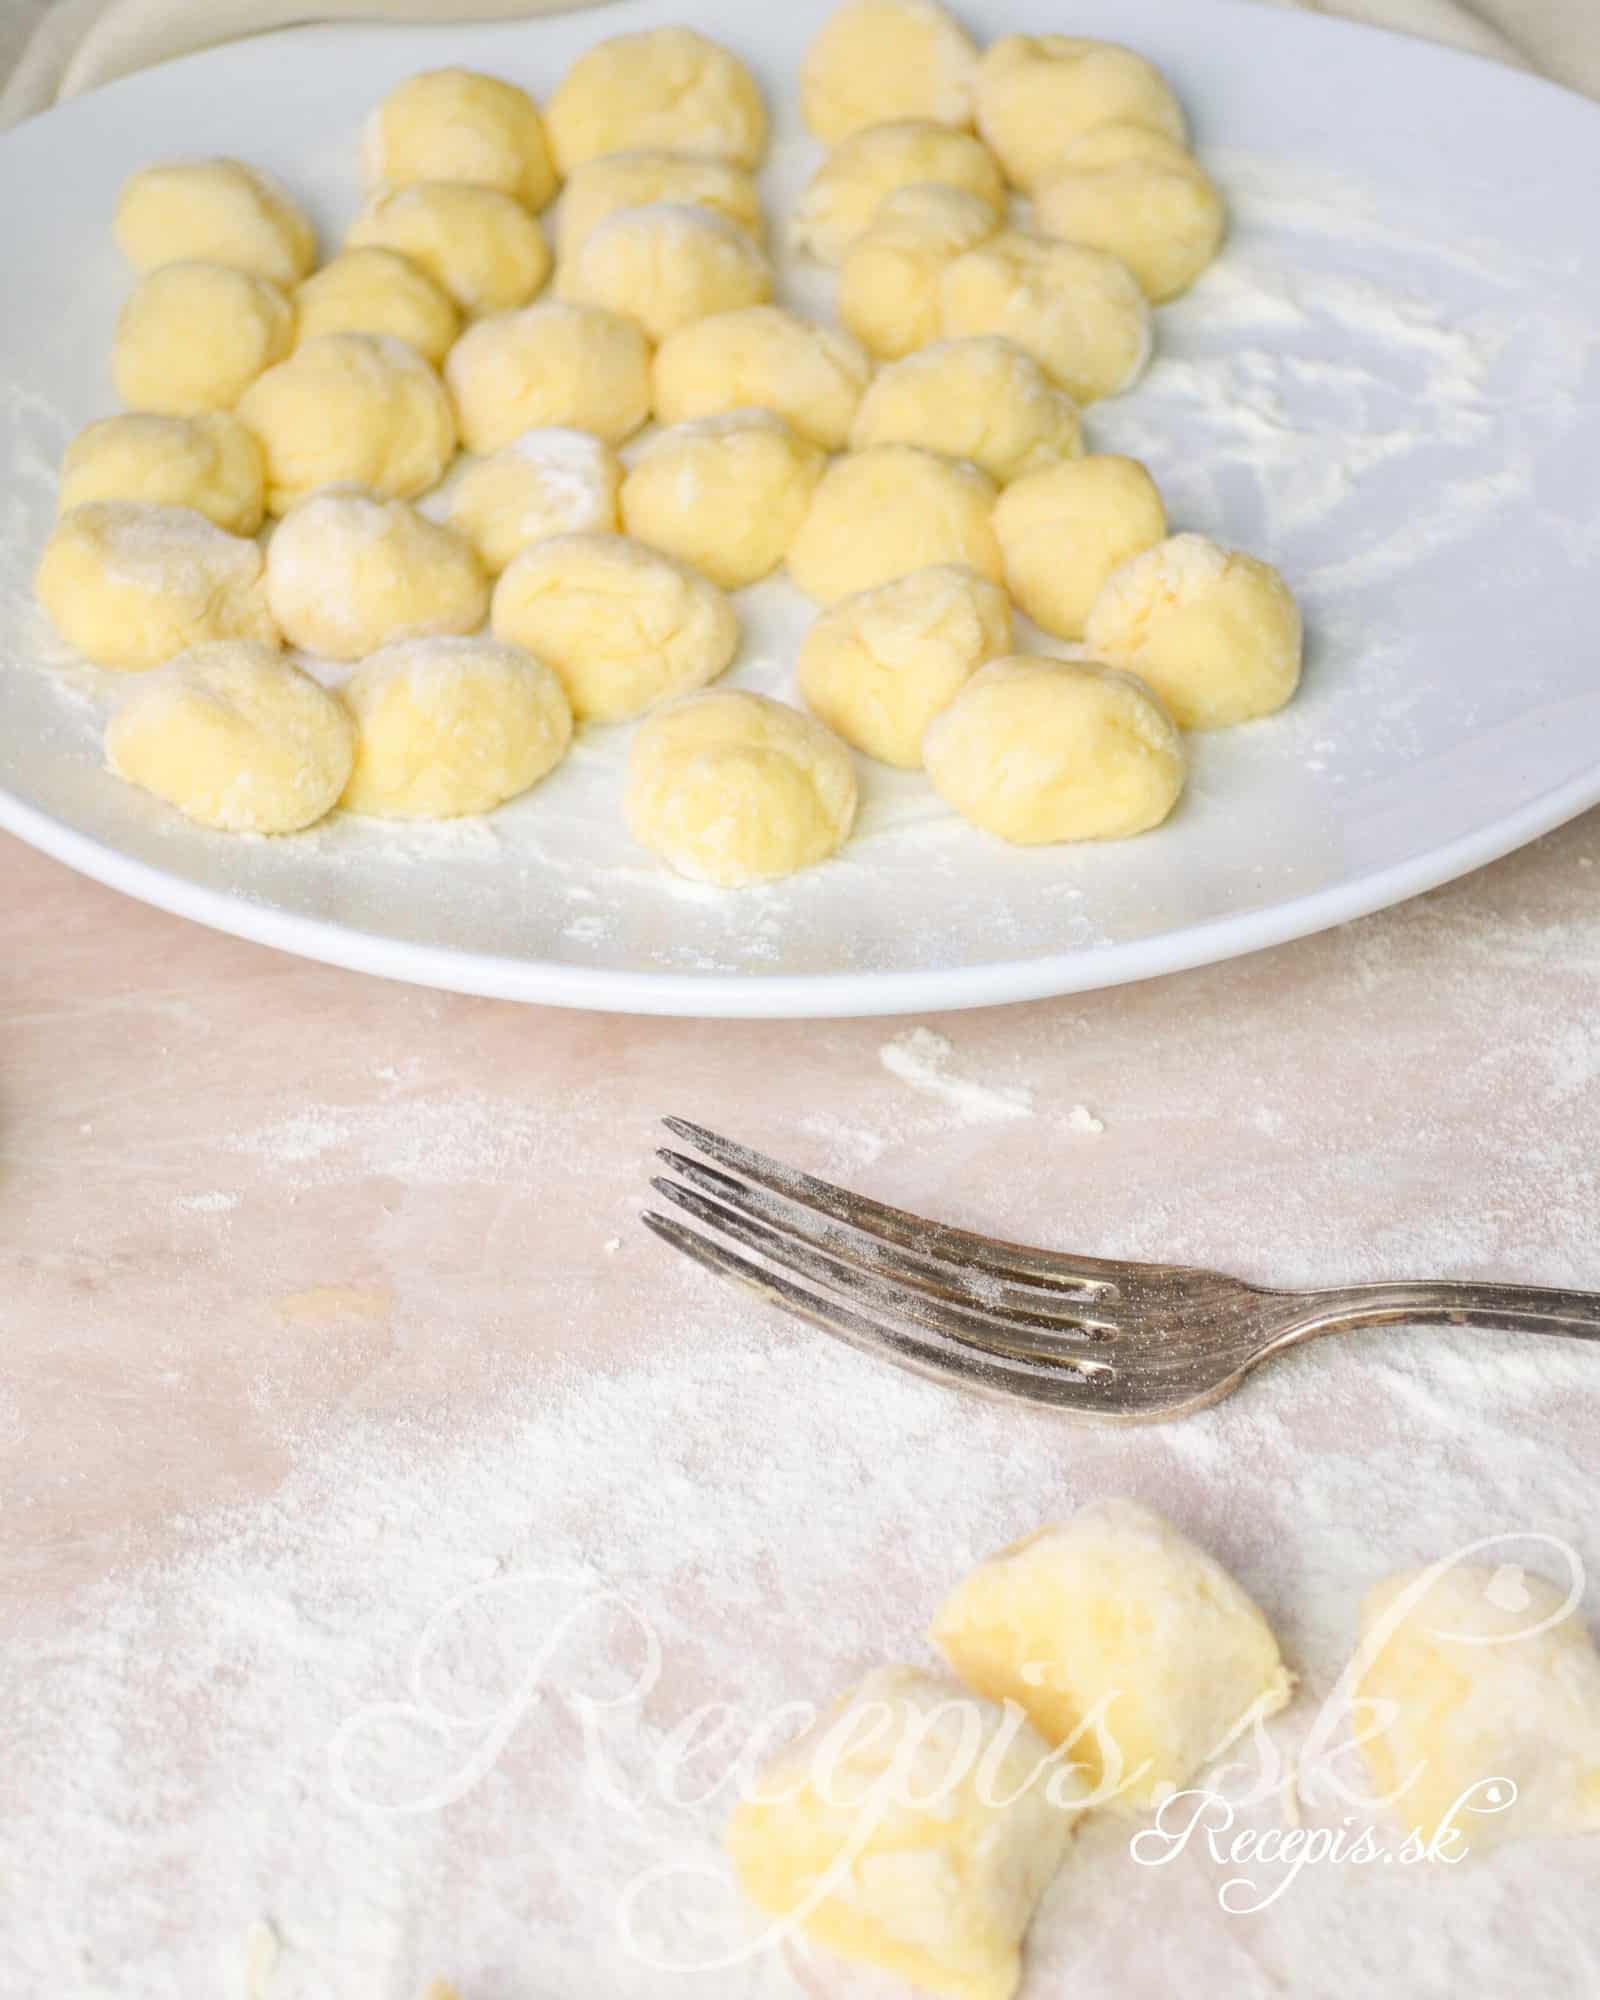 Fluffy potato gnocchi